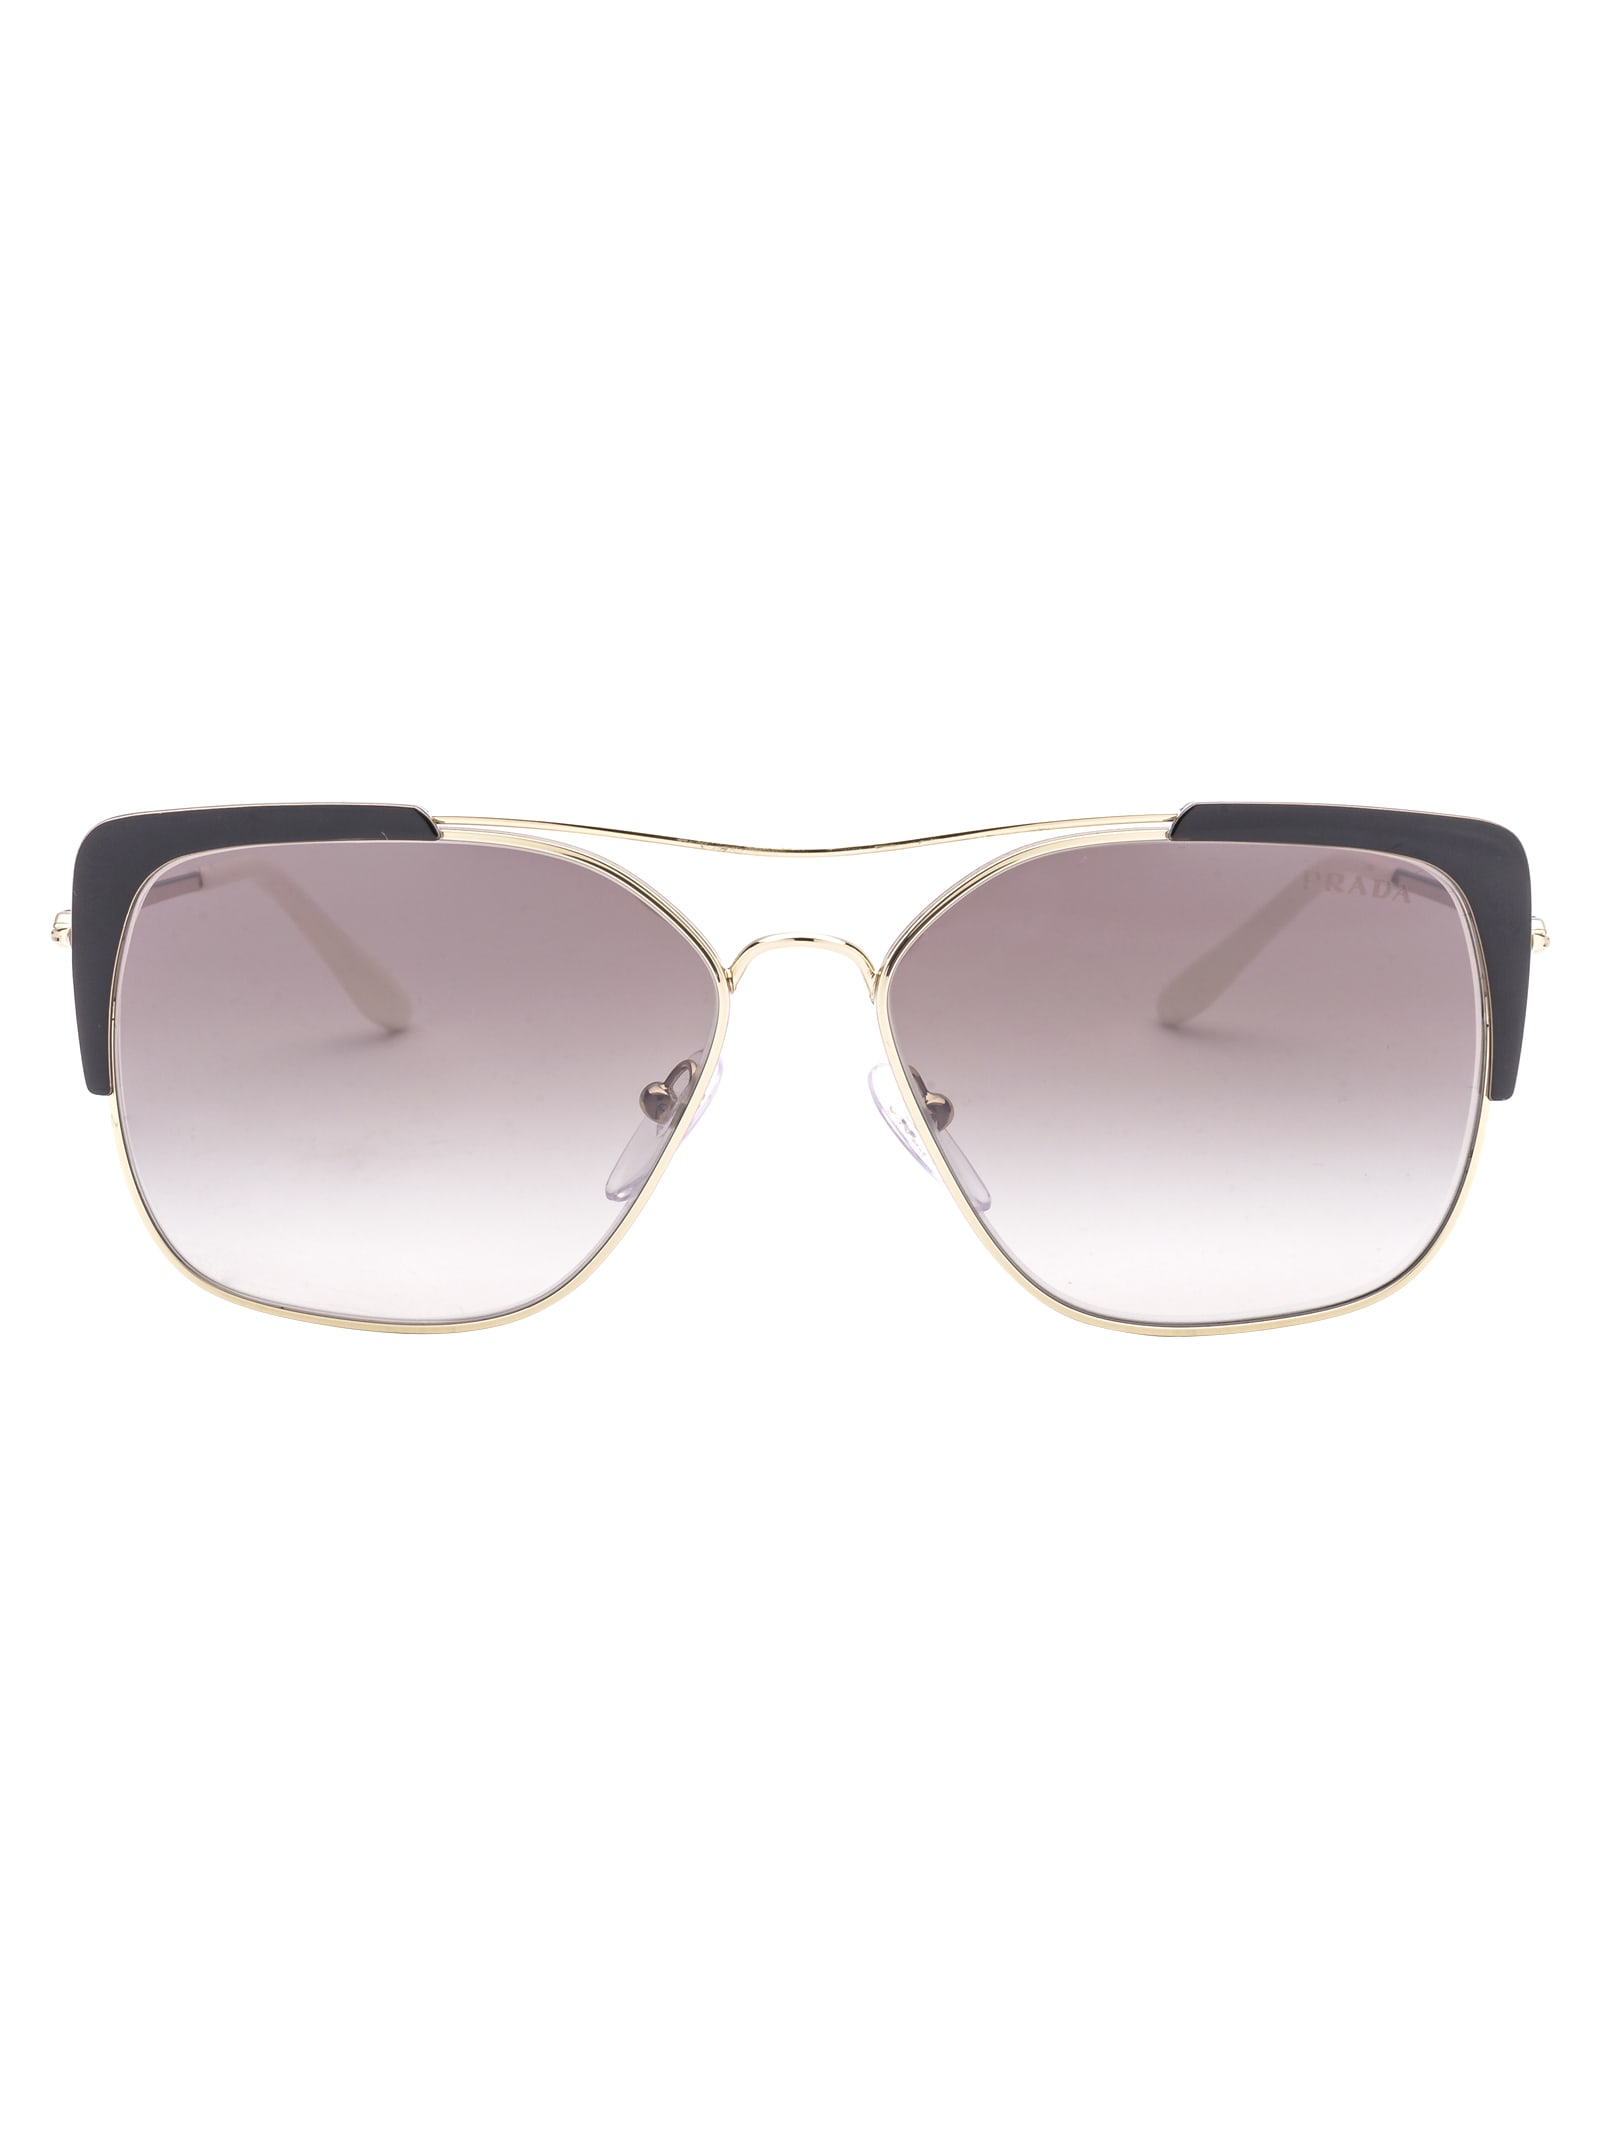 Prada Conceptual Sunglasses In Aav5o0 Pale Gold/black